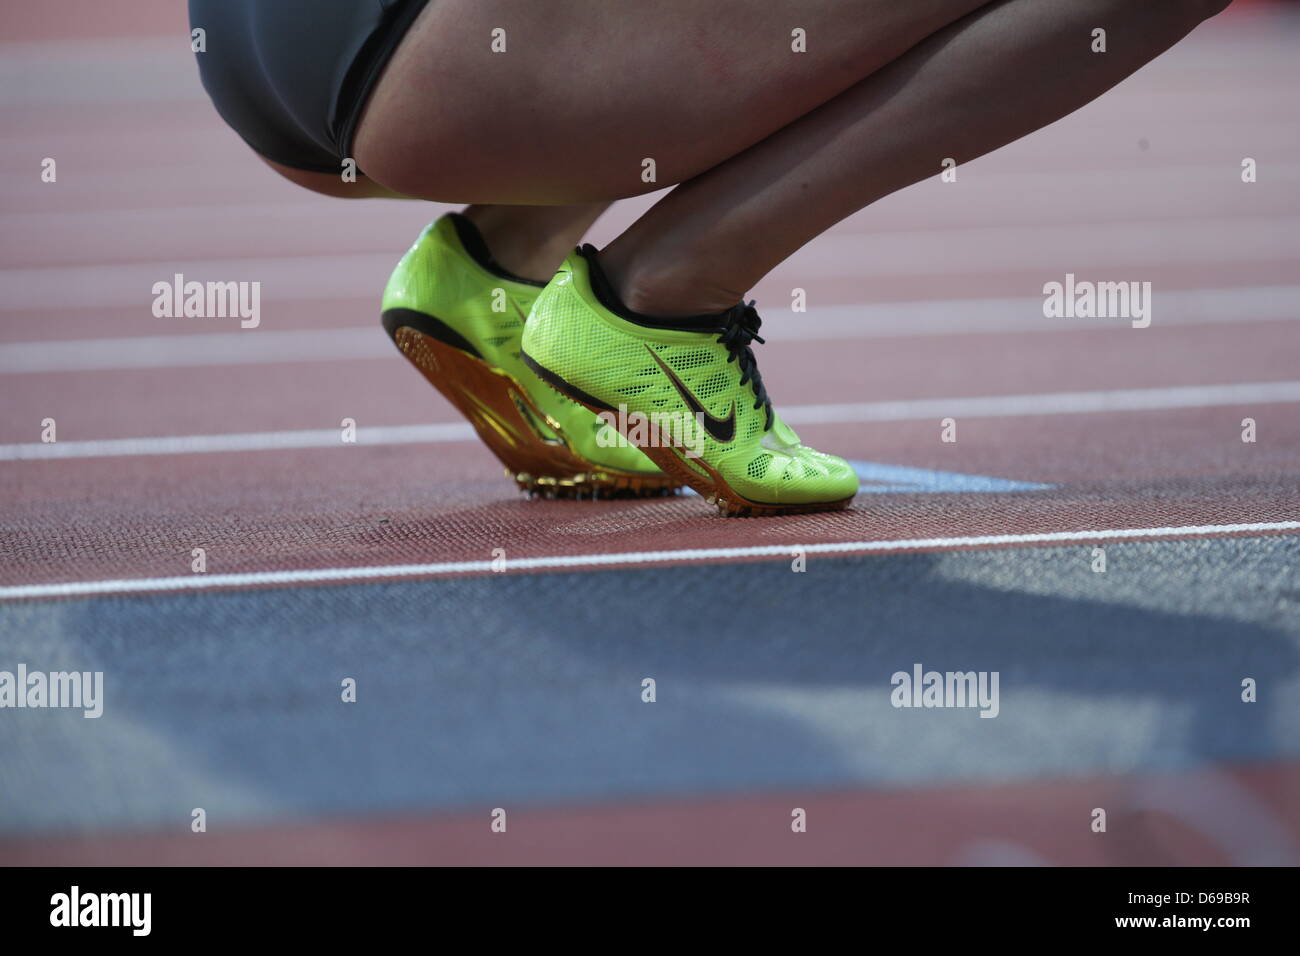 Zapatos Nike desgastados por la alemana Verena velero con la mujer durante  la competición final de 100m de los Juegos Olímpicos de Londres 2012  Atletismo, eventos de pista y campo en el